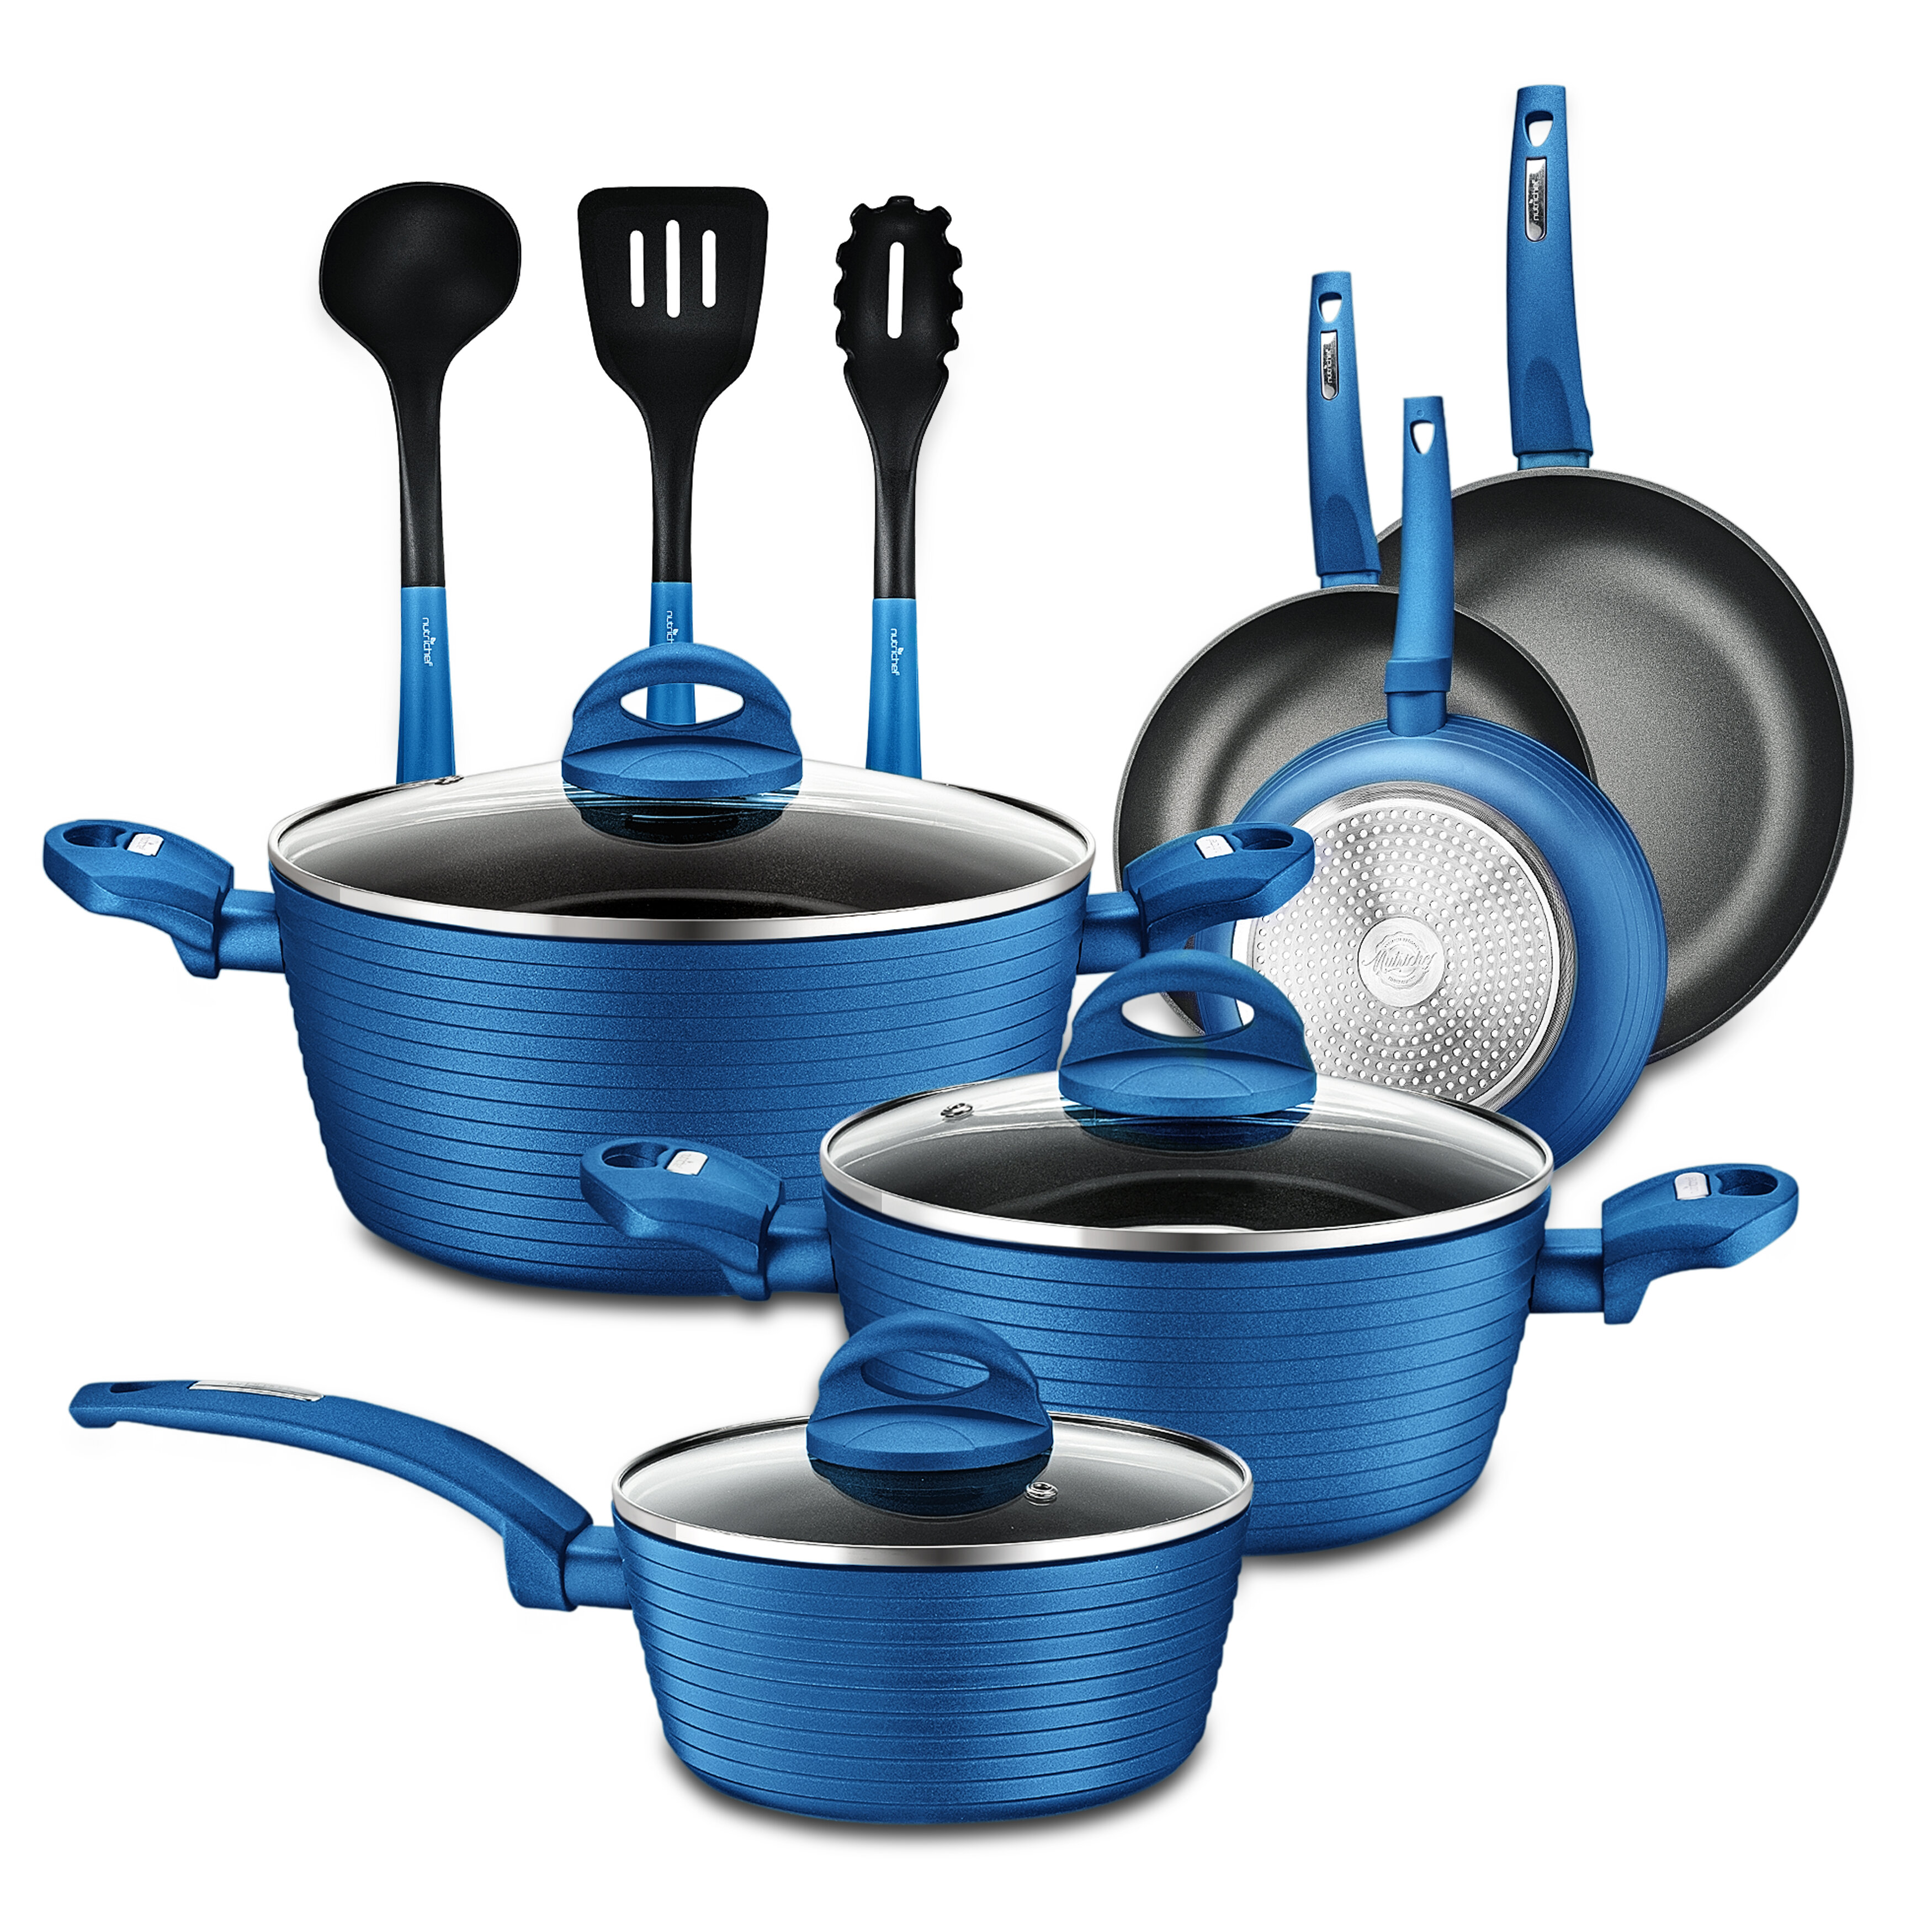 https://assets.wfcdn.com/im/90479599/compr-r85/1335/133562032/12-piece-non-stick-aluminum-cookware-set.jpg